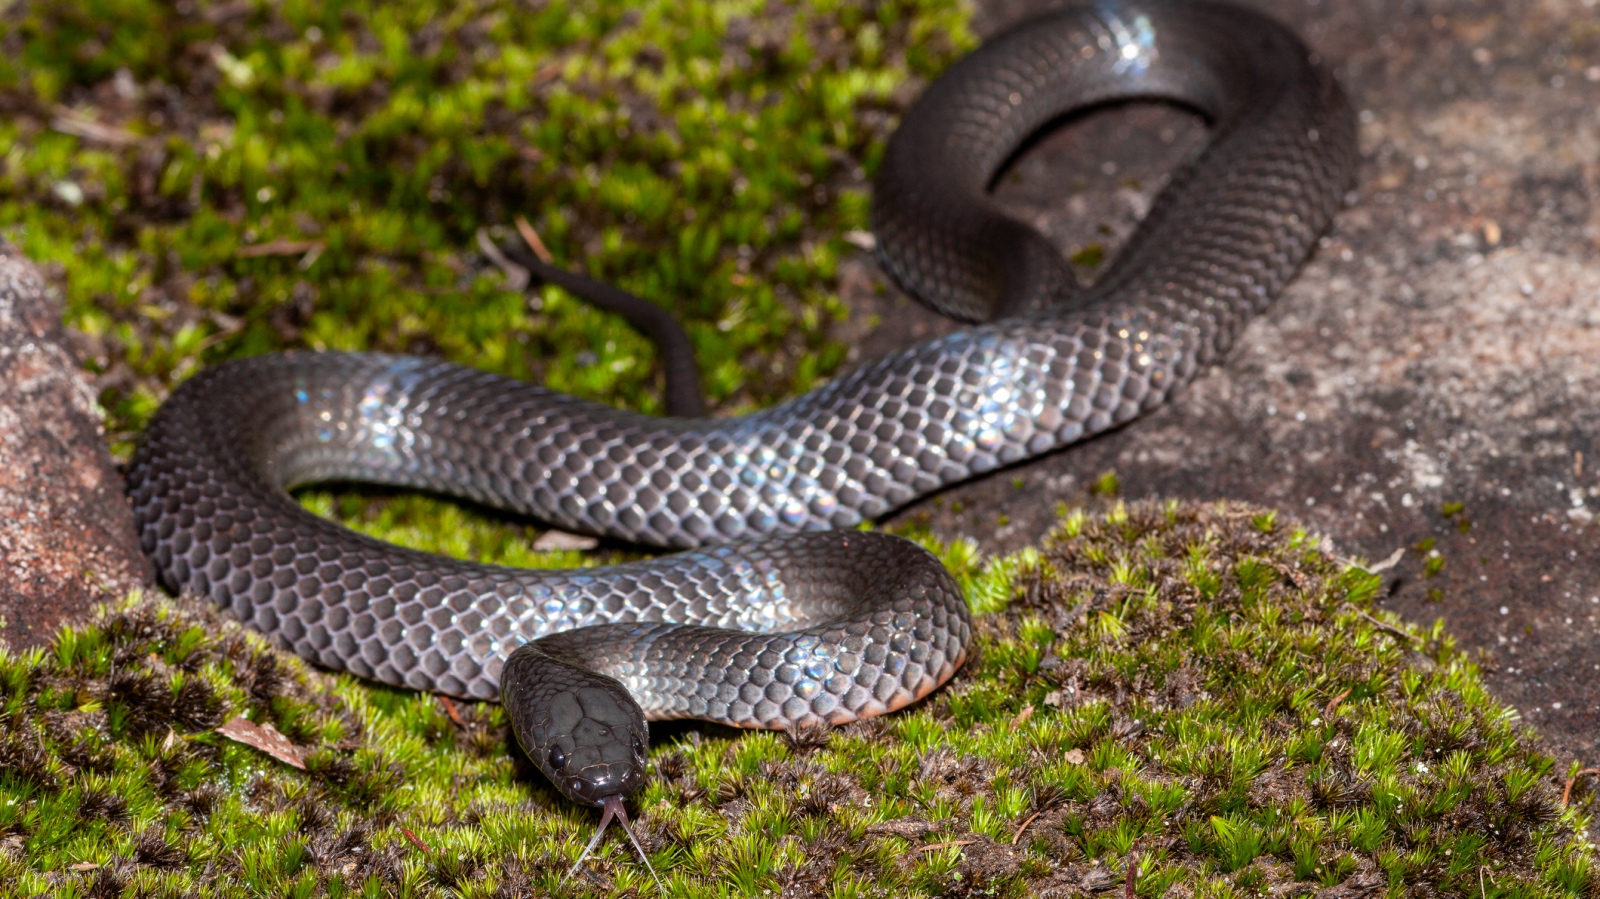 venomous Eastern small-eyed snake in Australia